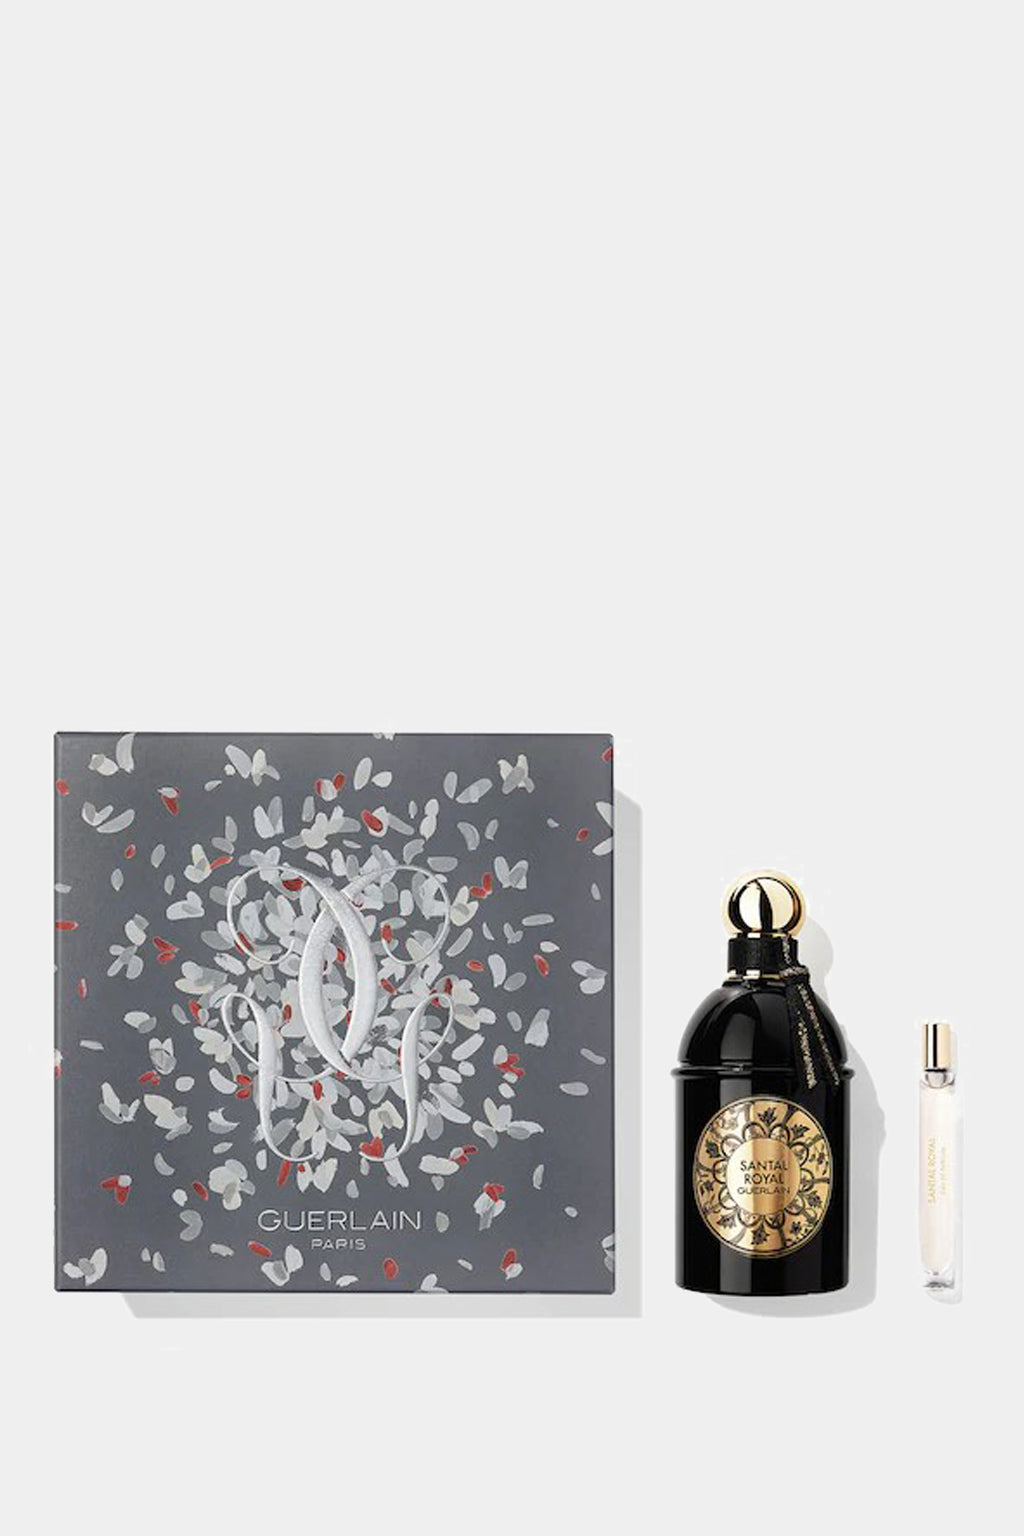 Guerlain - Santal Royal Les Absolus D'Orient Perfume Set